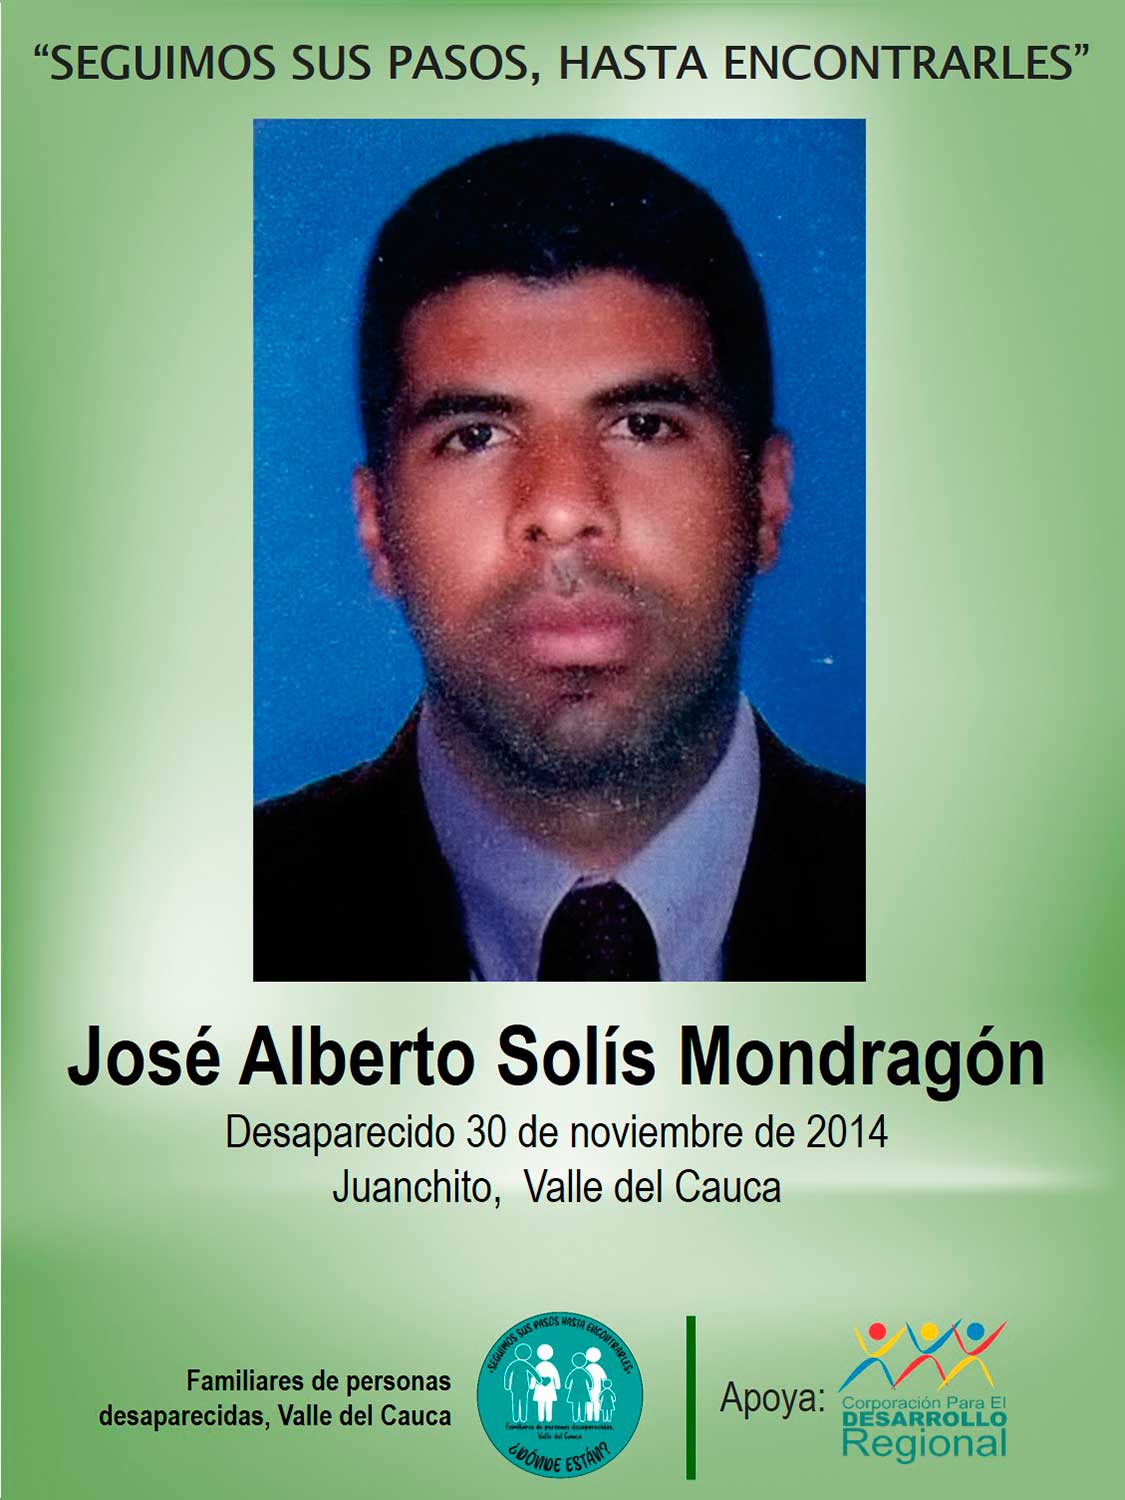 José Alberto Solís Mondragón